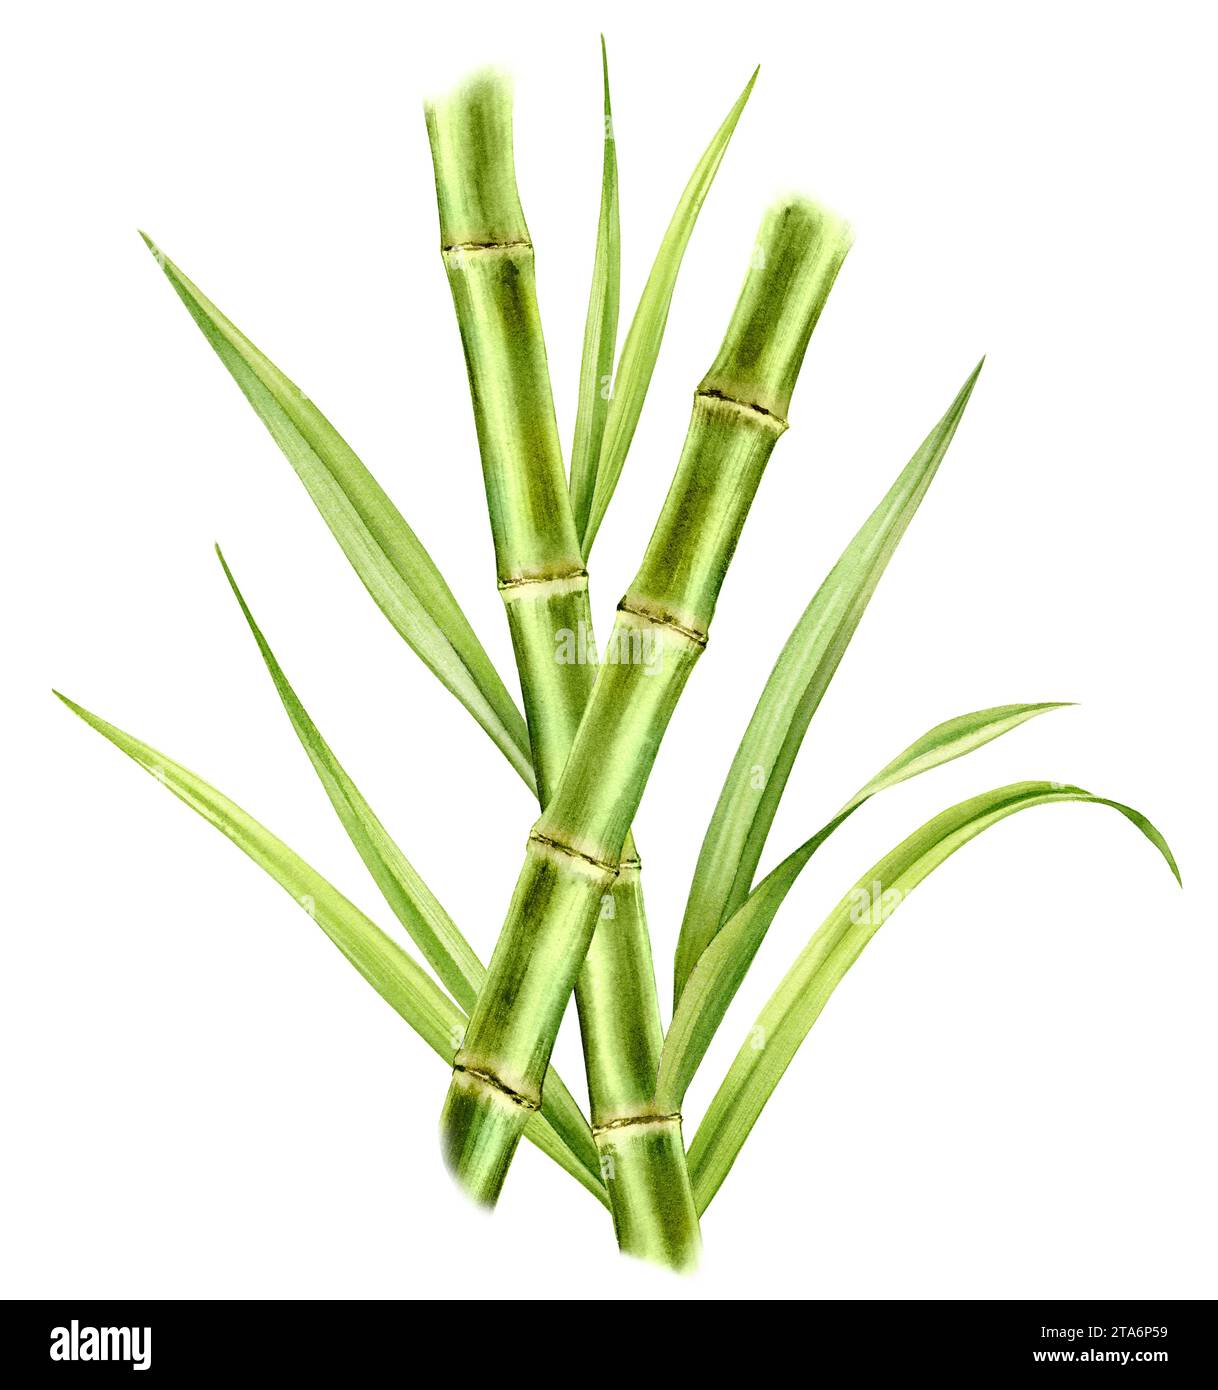 Bambus Aquarell Illustration. Zusammensetzung mit zwei sich kreuzenden Stämmen und glänzenden Blättern. Frisches grünes Aquarellgemälde. Realistische Botanik Stockfoto